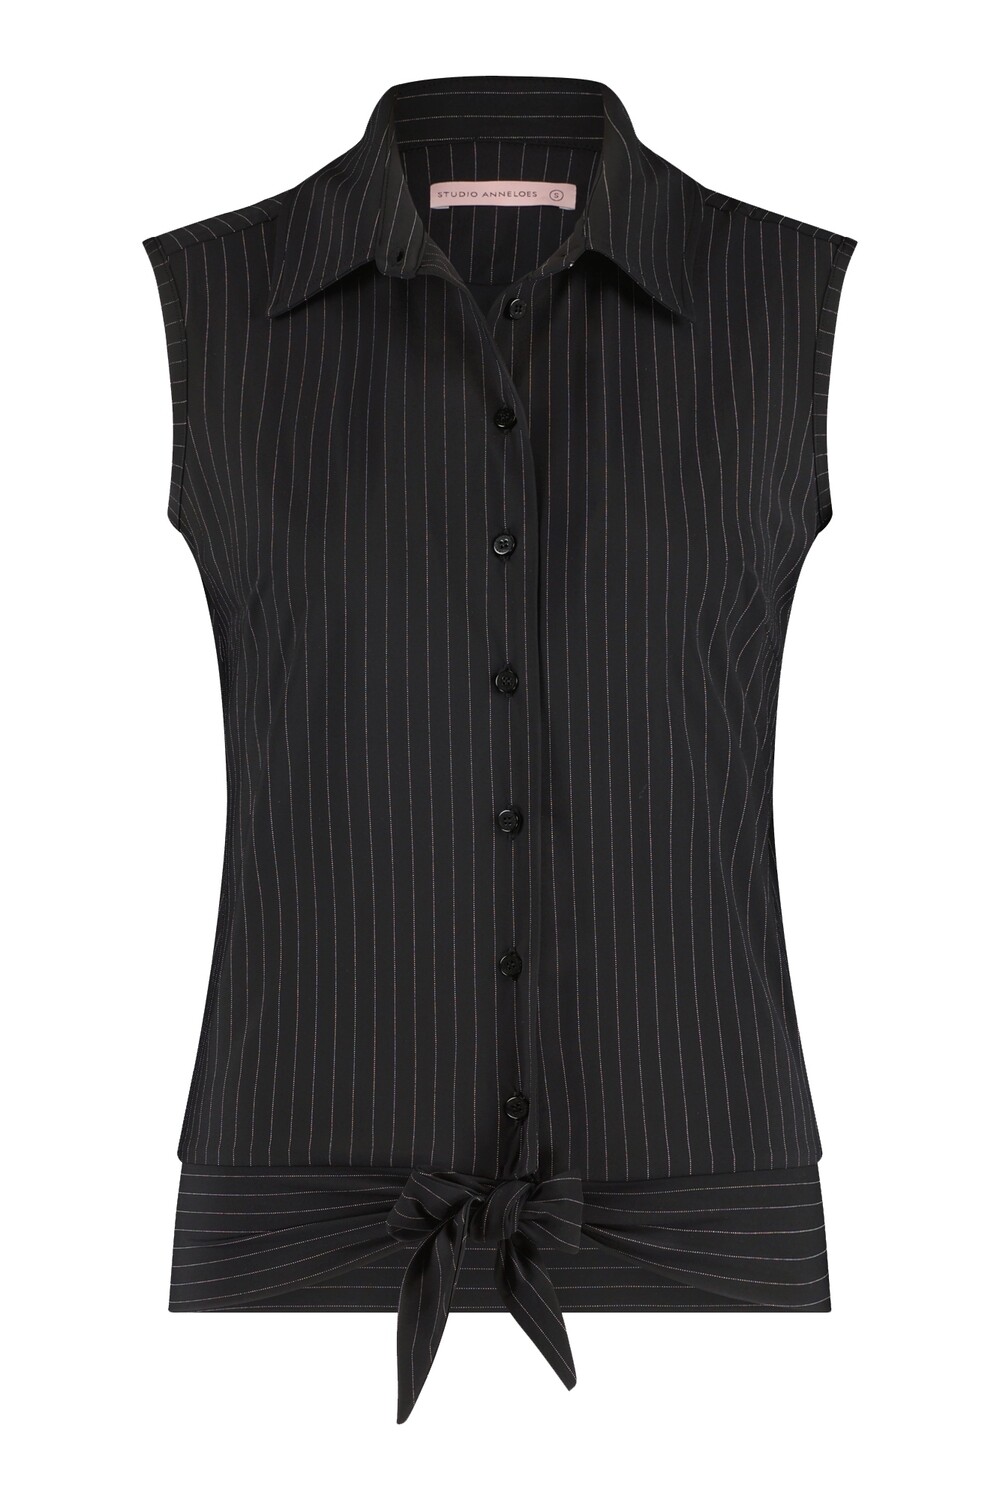 Pippa sl pinstripe blouse, black/off white